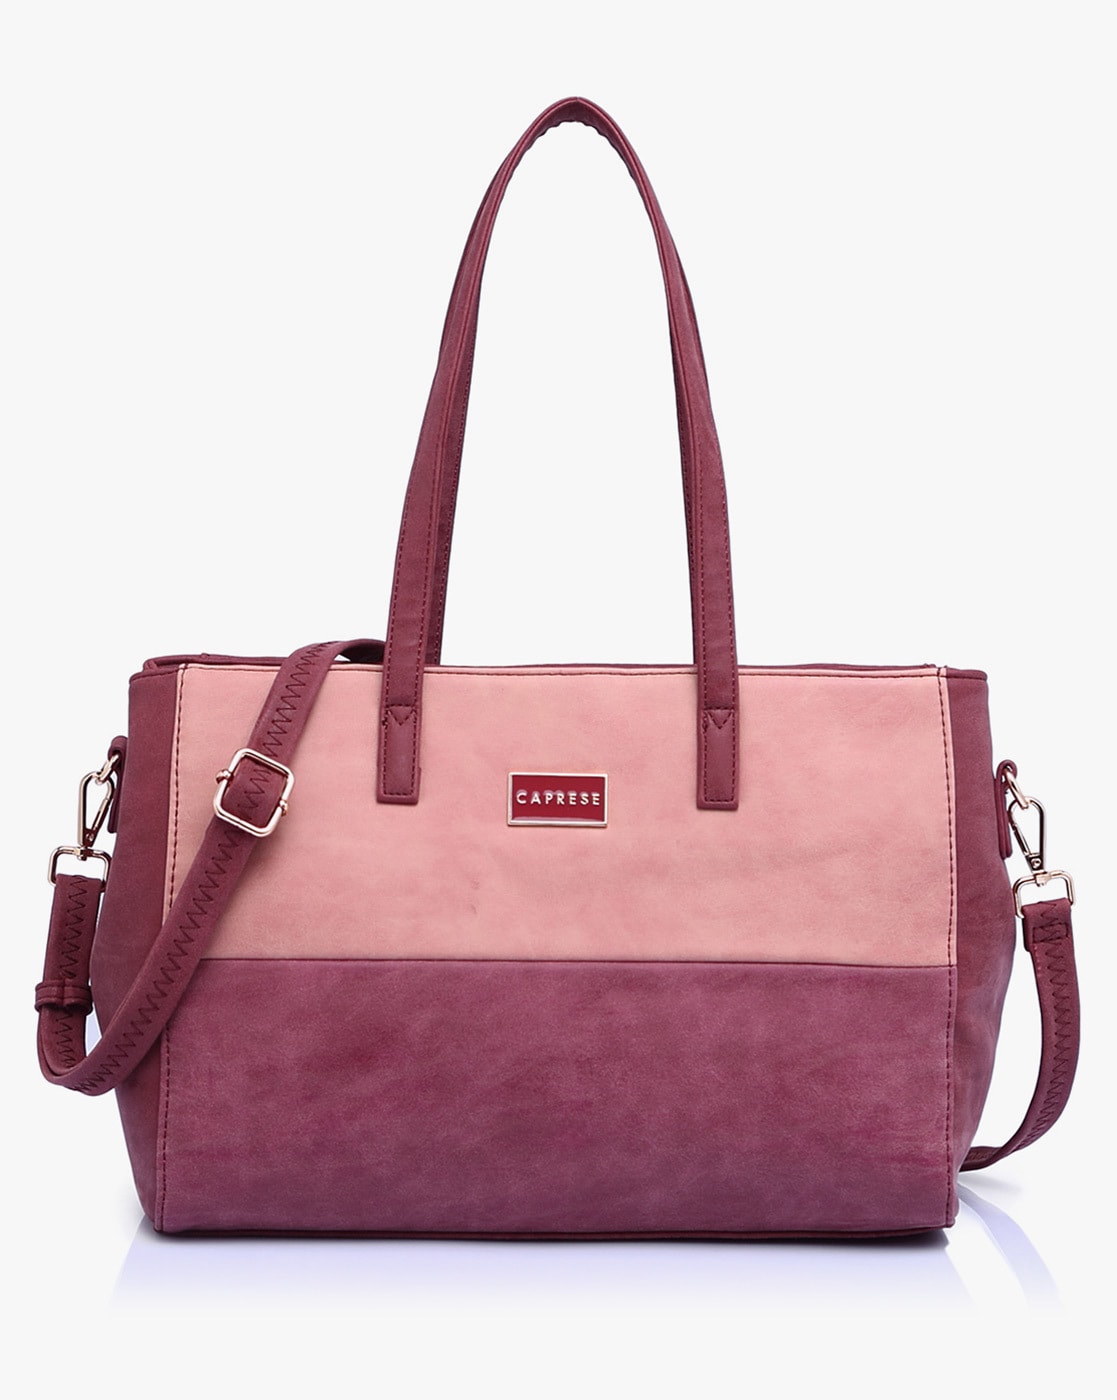 Image result for caprese bags | Bags, Caprese bag, Camera bag